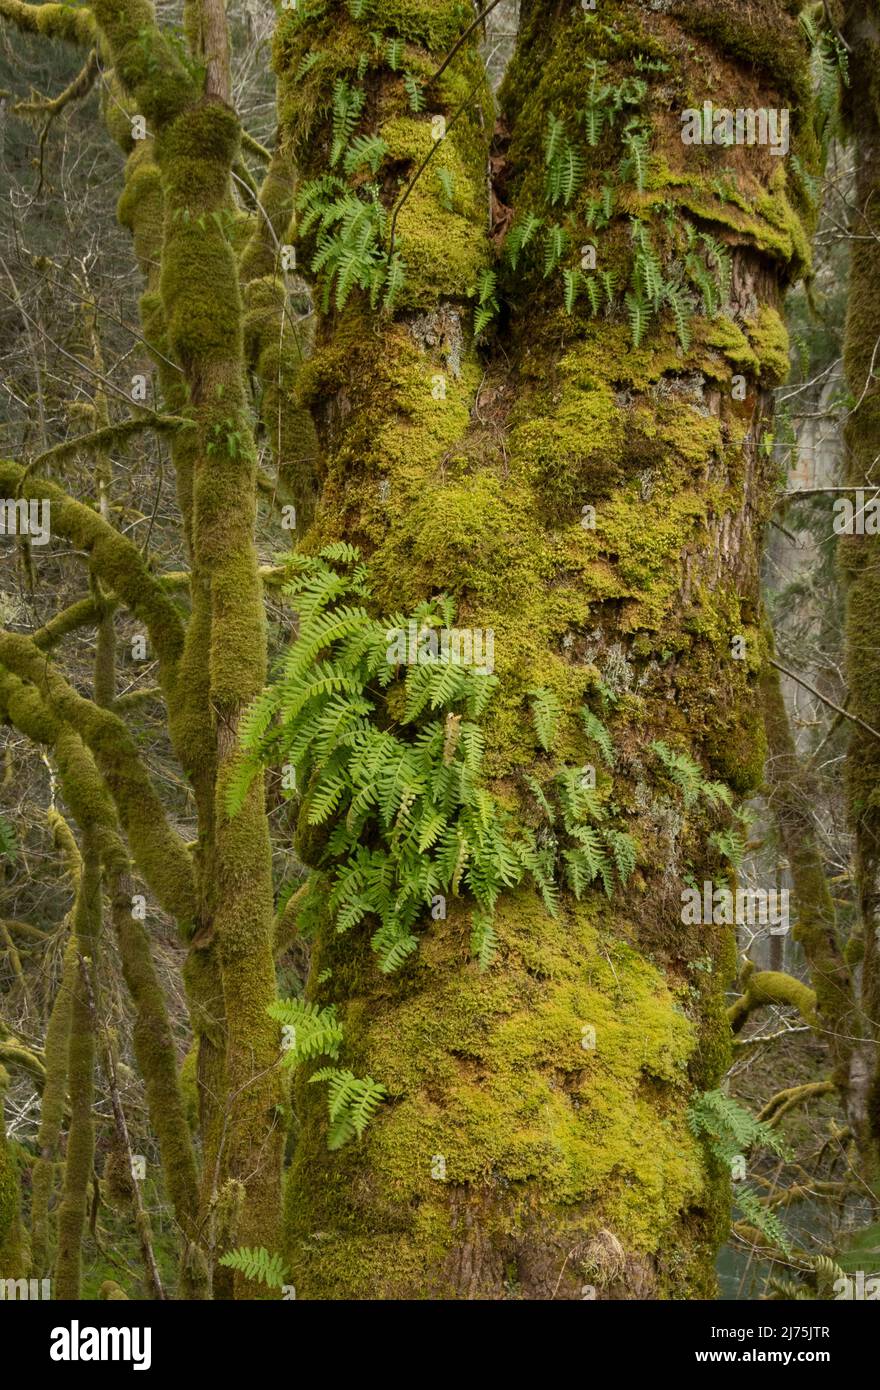 Mossy forest, coast range, Oregon Stock Photo